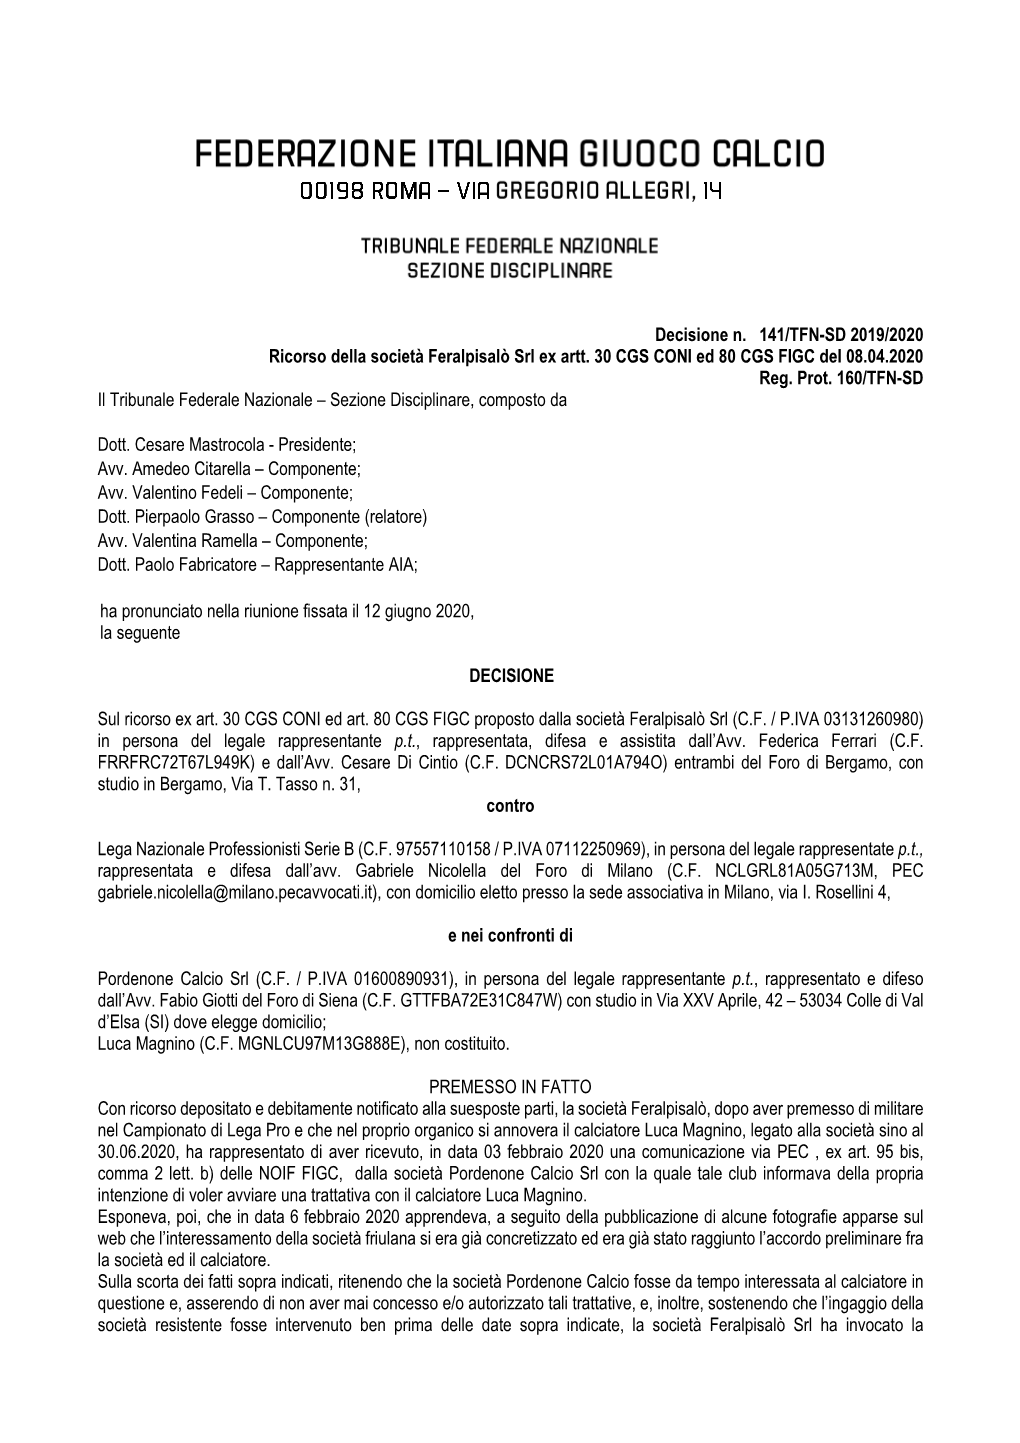 Decisione N. 141/TFN-SD 2019/2020 Ricorso Della Società Feralpisalò Srl Ex Artt. 30 CGS CONI Ed 80 CGS FIGC Del 08.04.2020 Reg